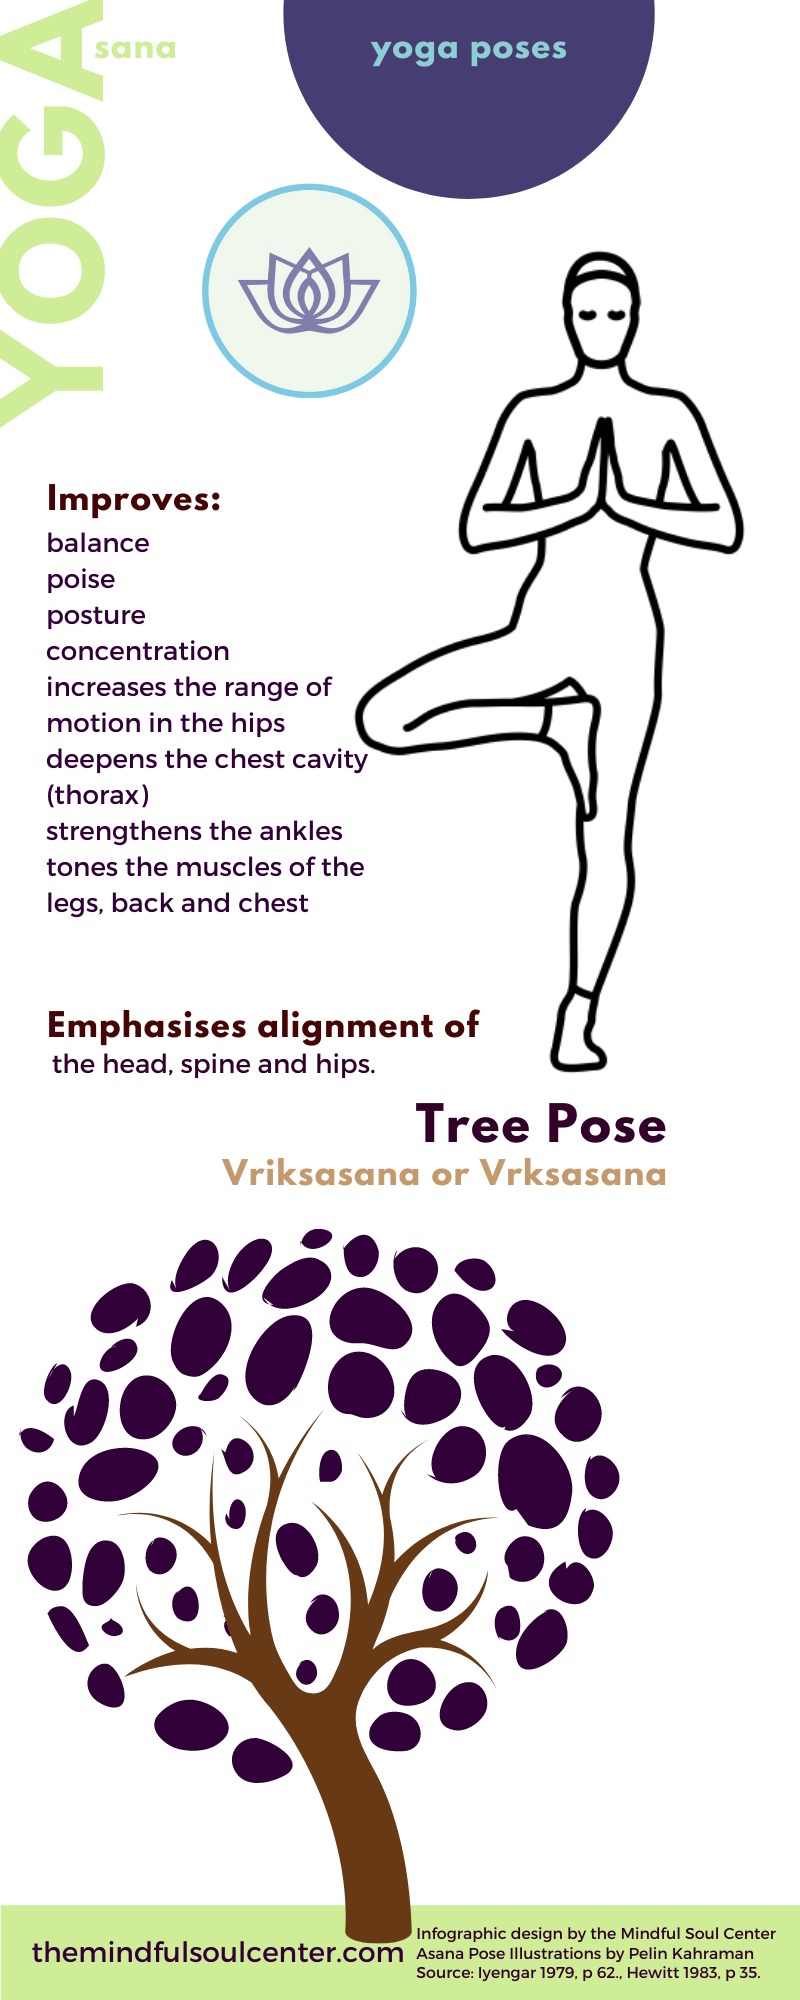 Tree Pose, Mythology and Benefits [Vriksasana]